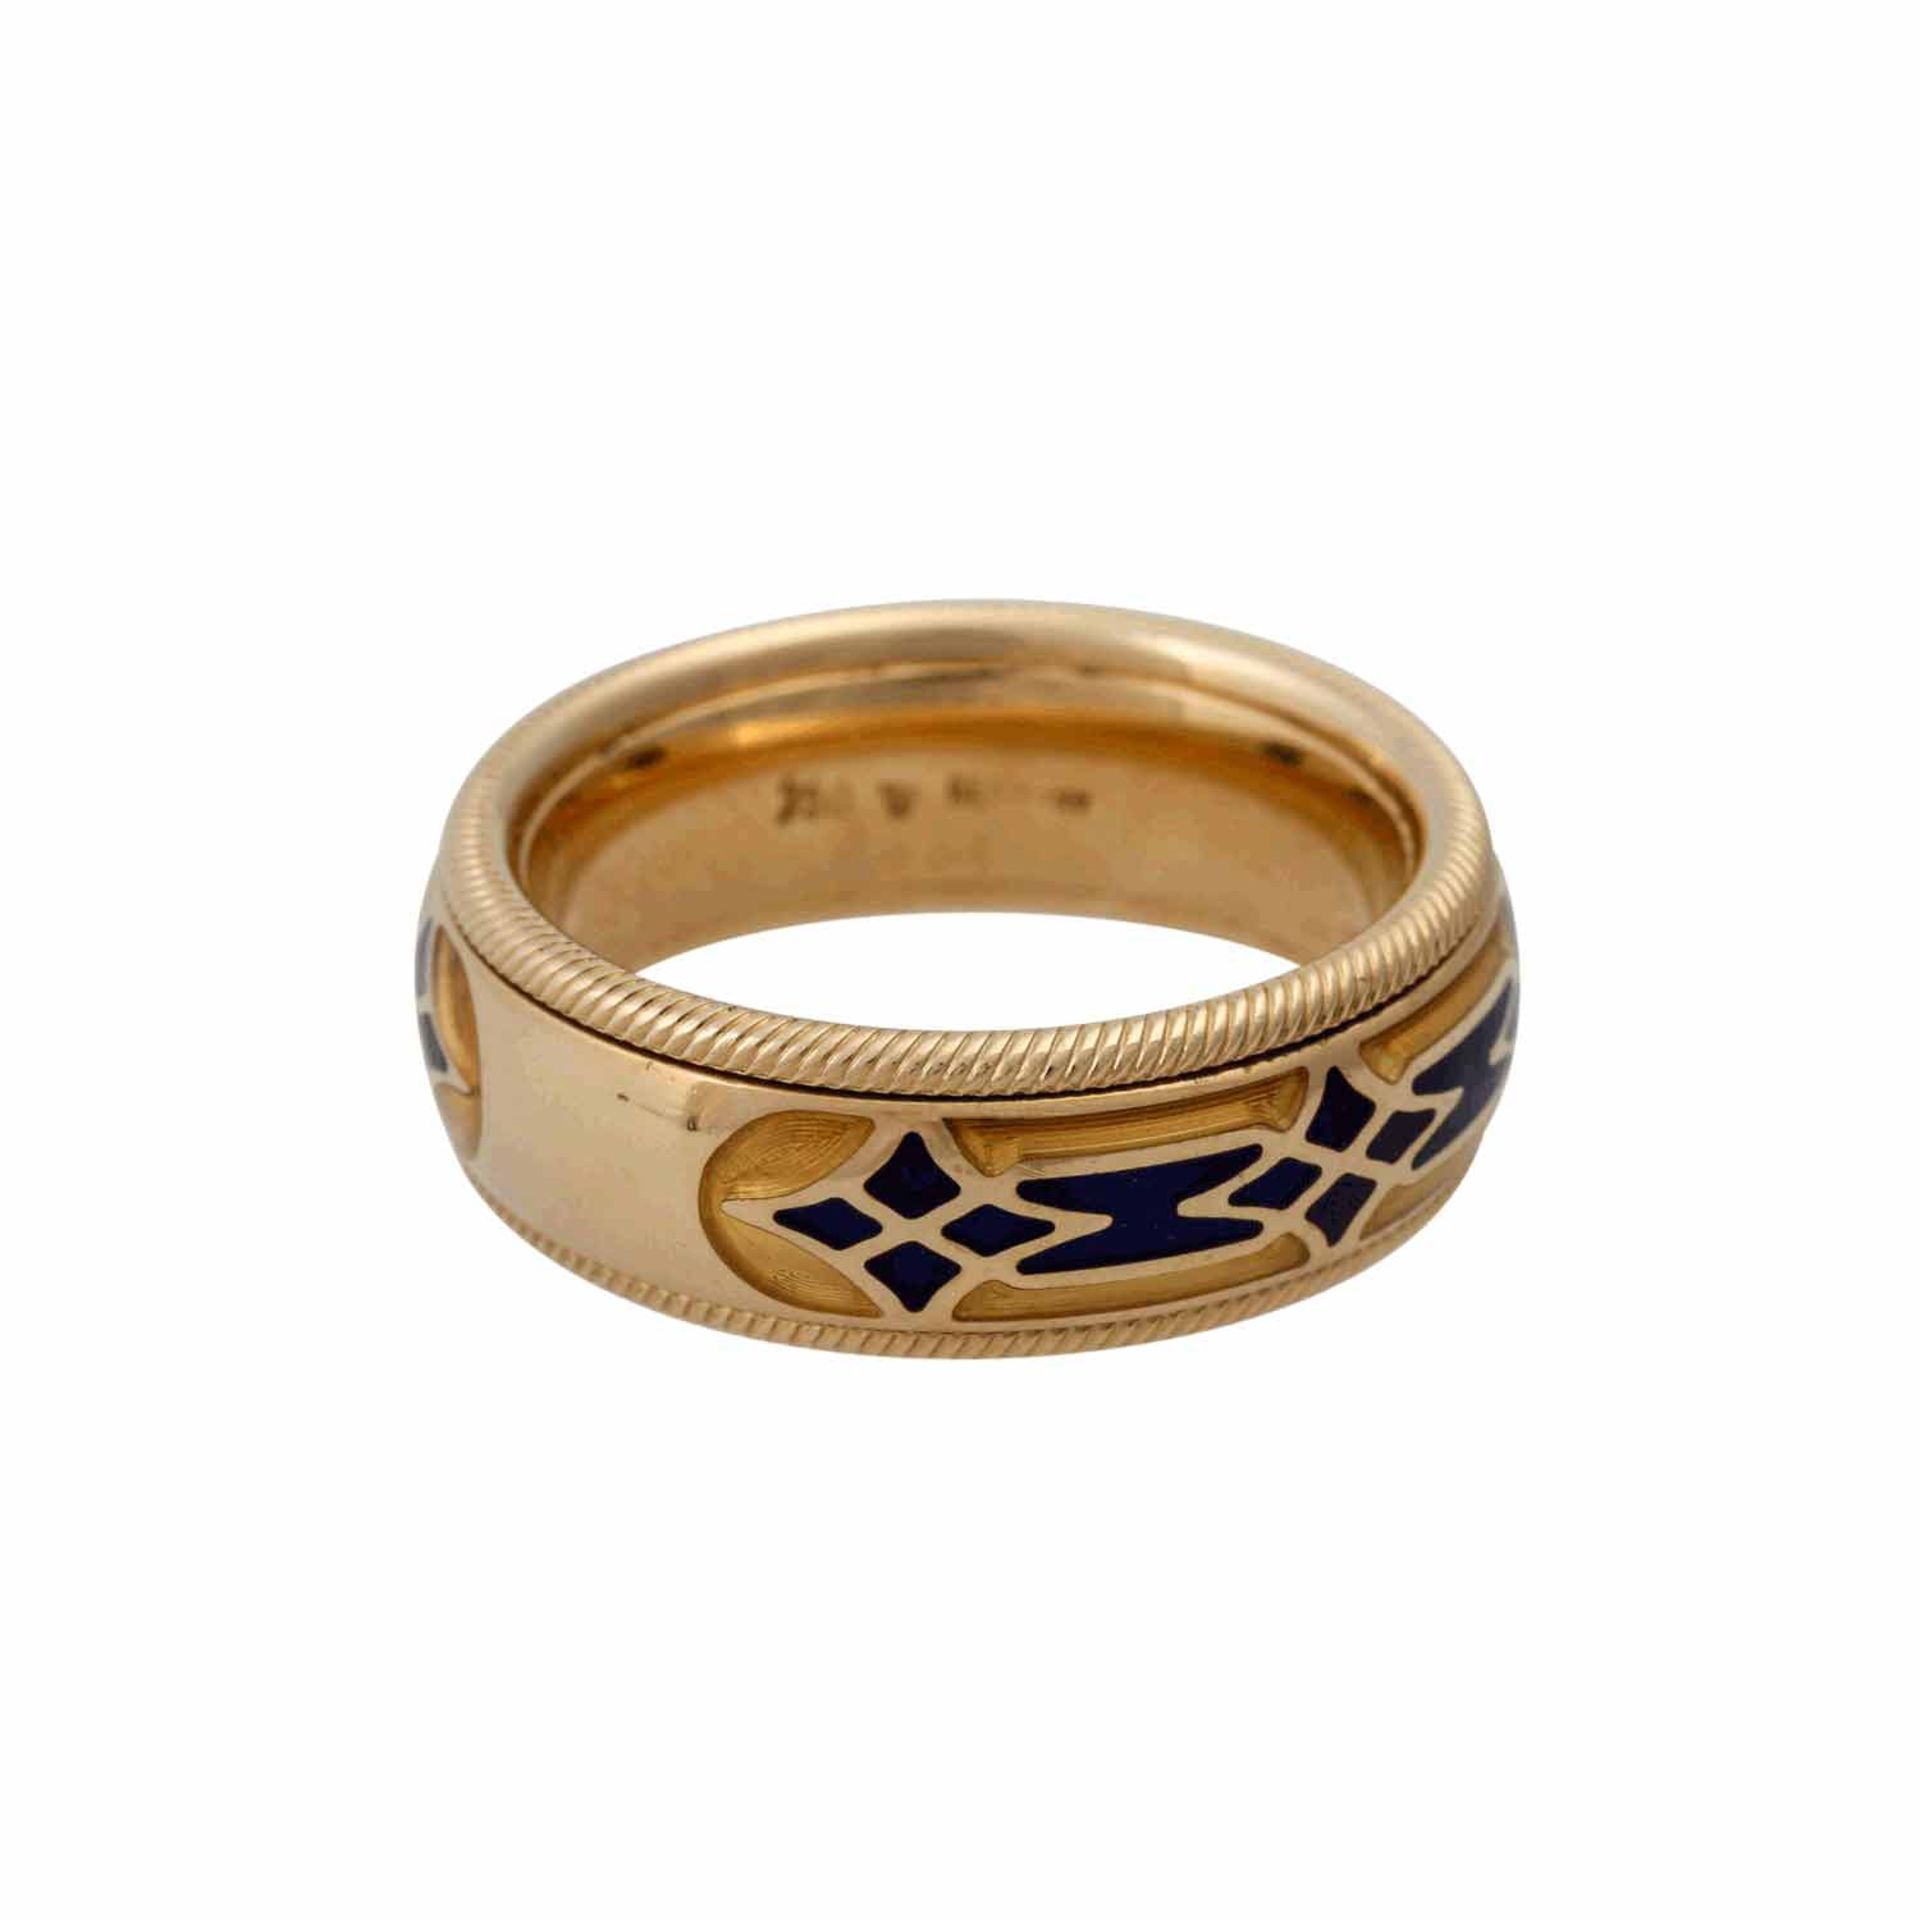 WELLENDORFF Ring "Baronesse" mit Brillantvon 0,02 ct und blauem/gelbem Email, drehbar, - Image 3 of 5